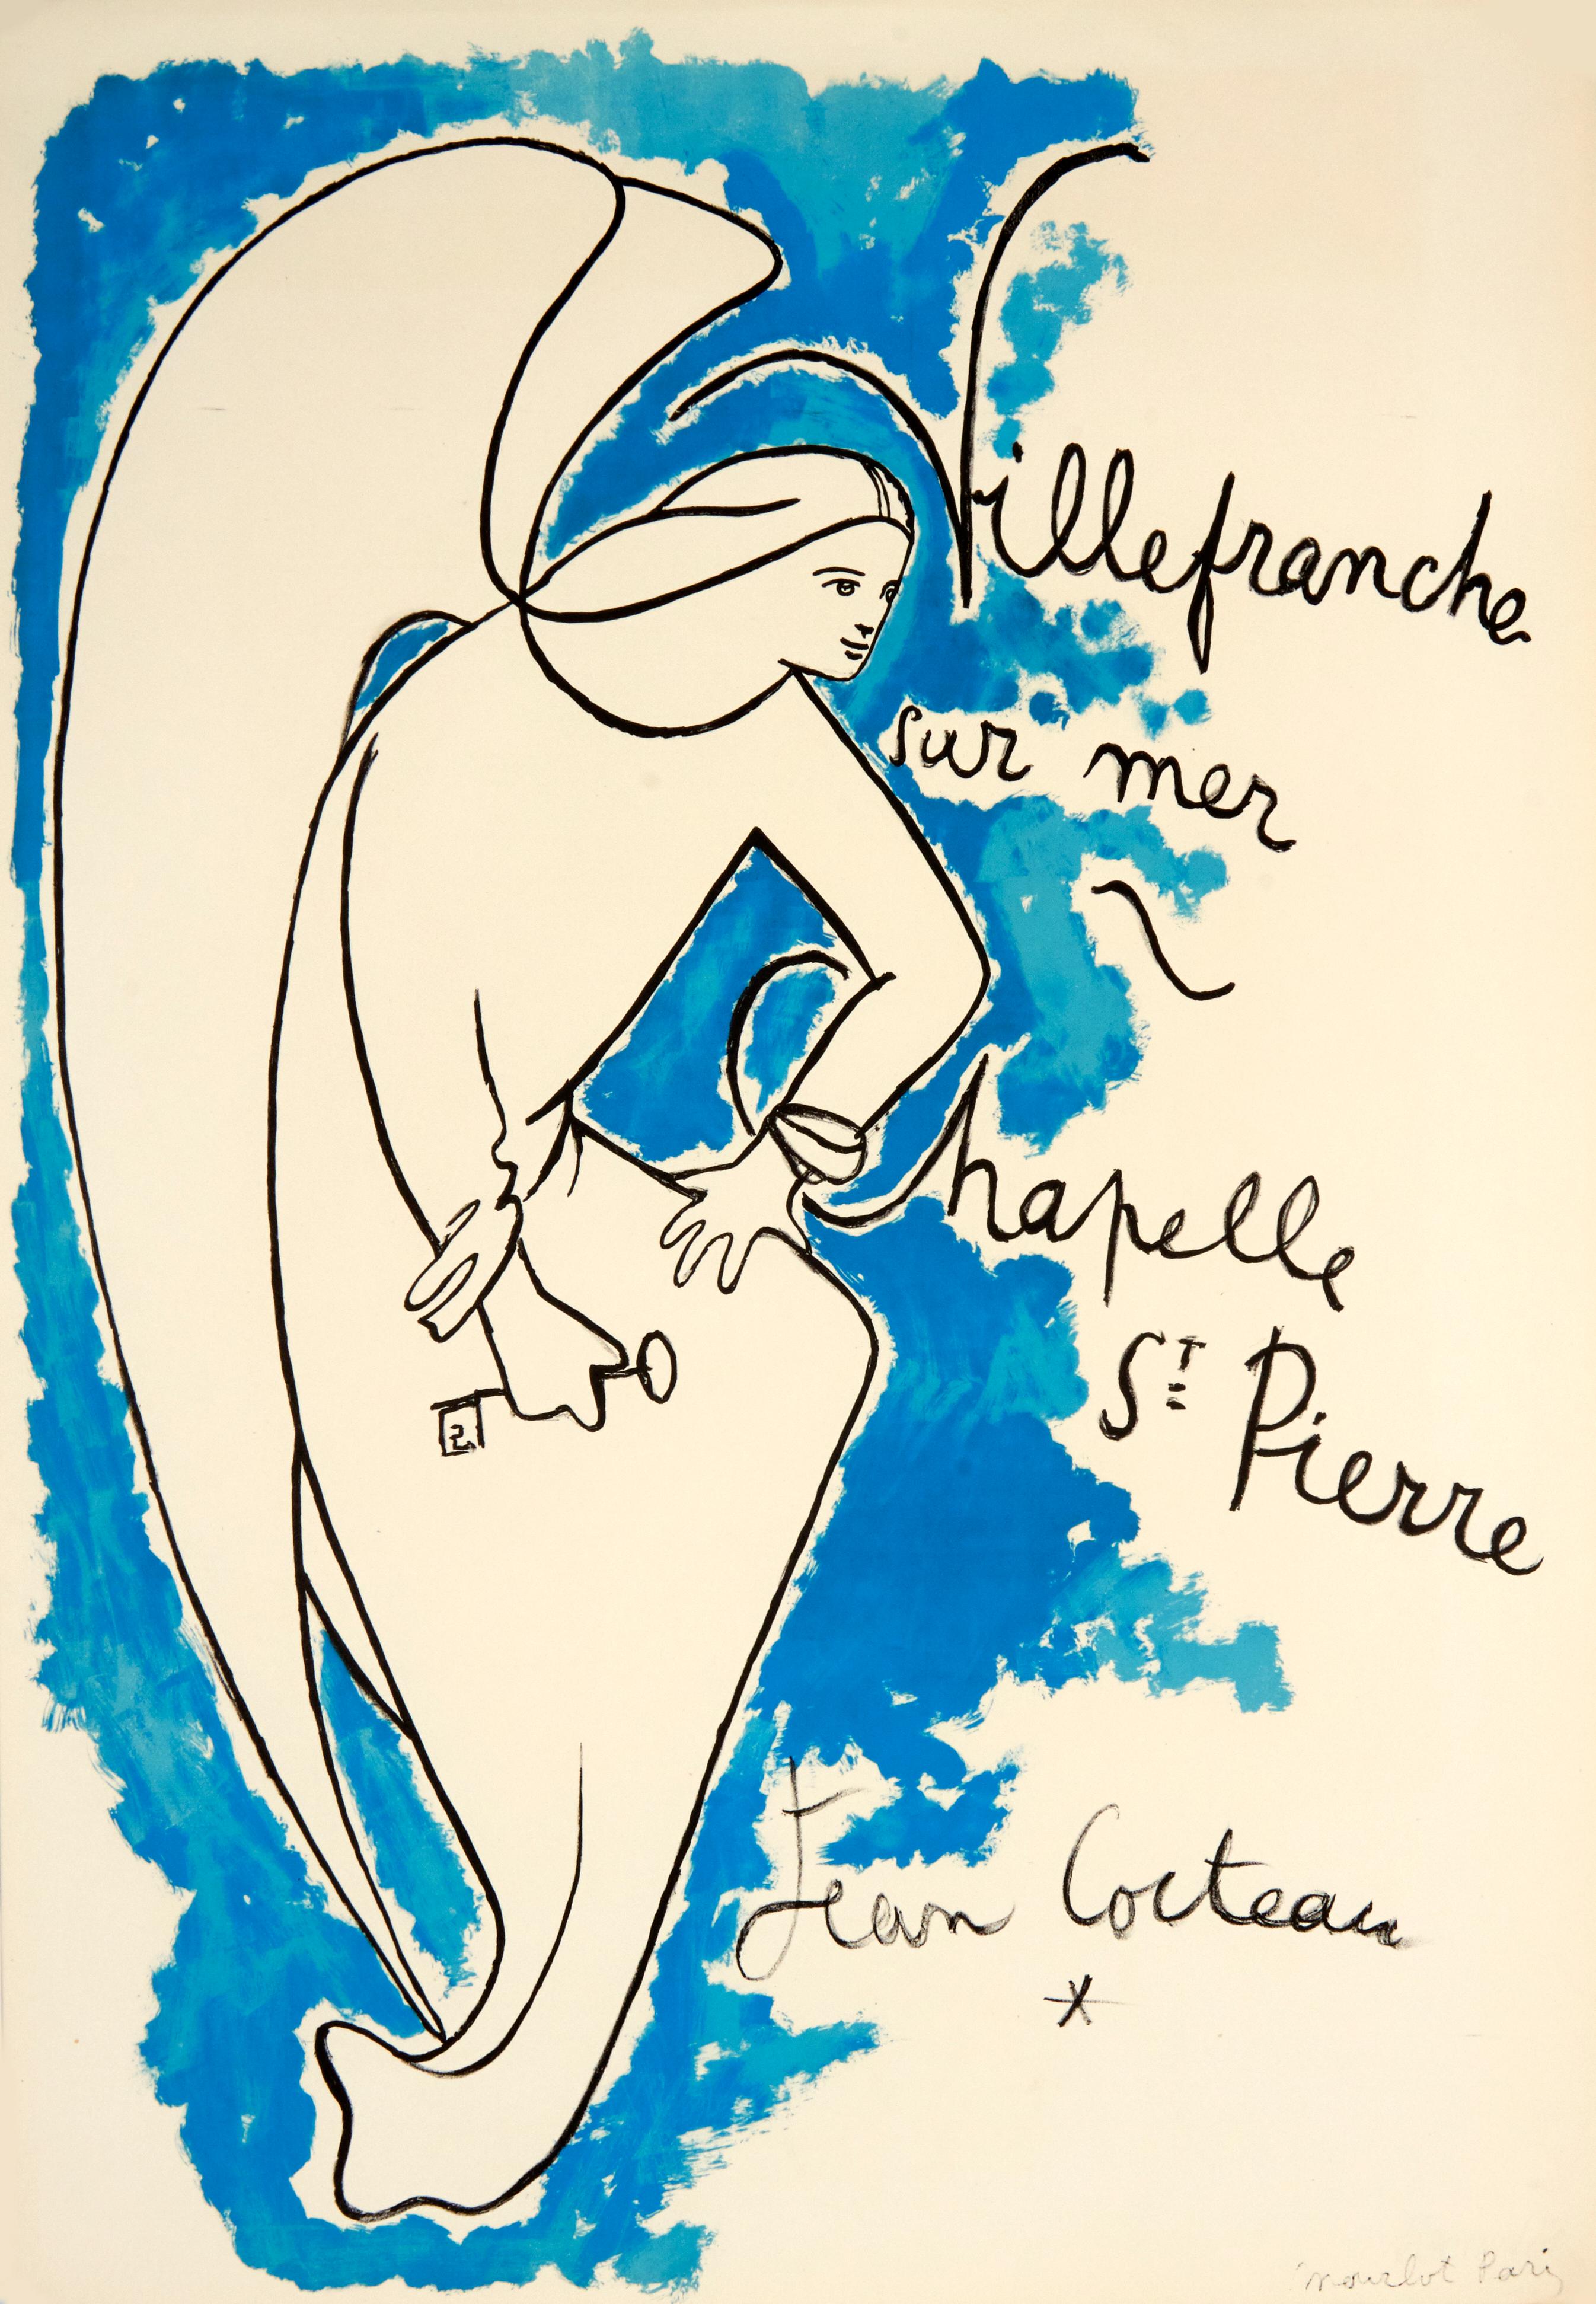 Künstler: Jean Cocteau

Medium: Original-Lithografie-Plakat, 1957

Abmessungen: 29.5 x 20,5 Zoll, 74,9 x 52,07 cm

Arches Papier - Ausgezeichneter Zustand A

Dieses kultige und originelle lithografische Plakat wurde von Jean Cocteau zur Feier der